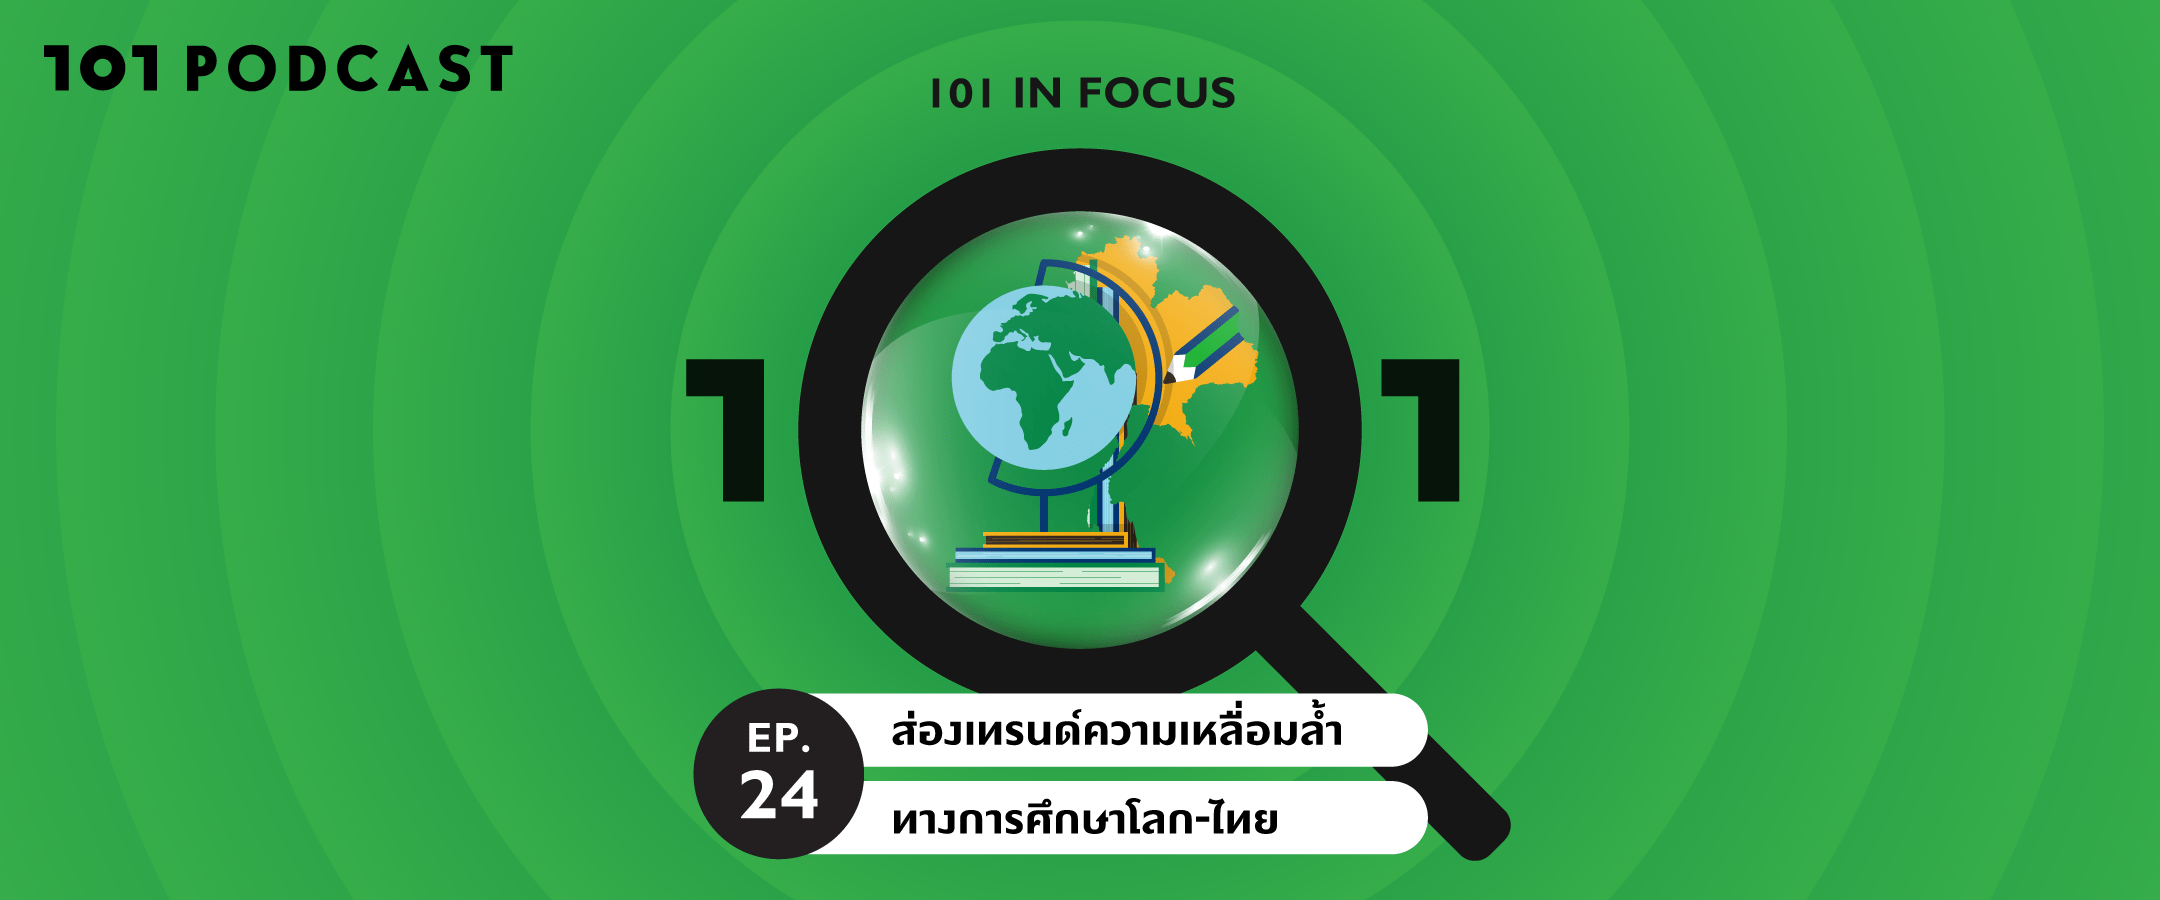 101 In Focus Ep.24 : ส่องเทรนด์ความเหลื่อมล้ำทางการศึกษาโลก-ไทย